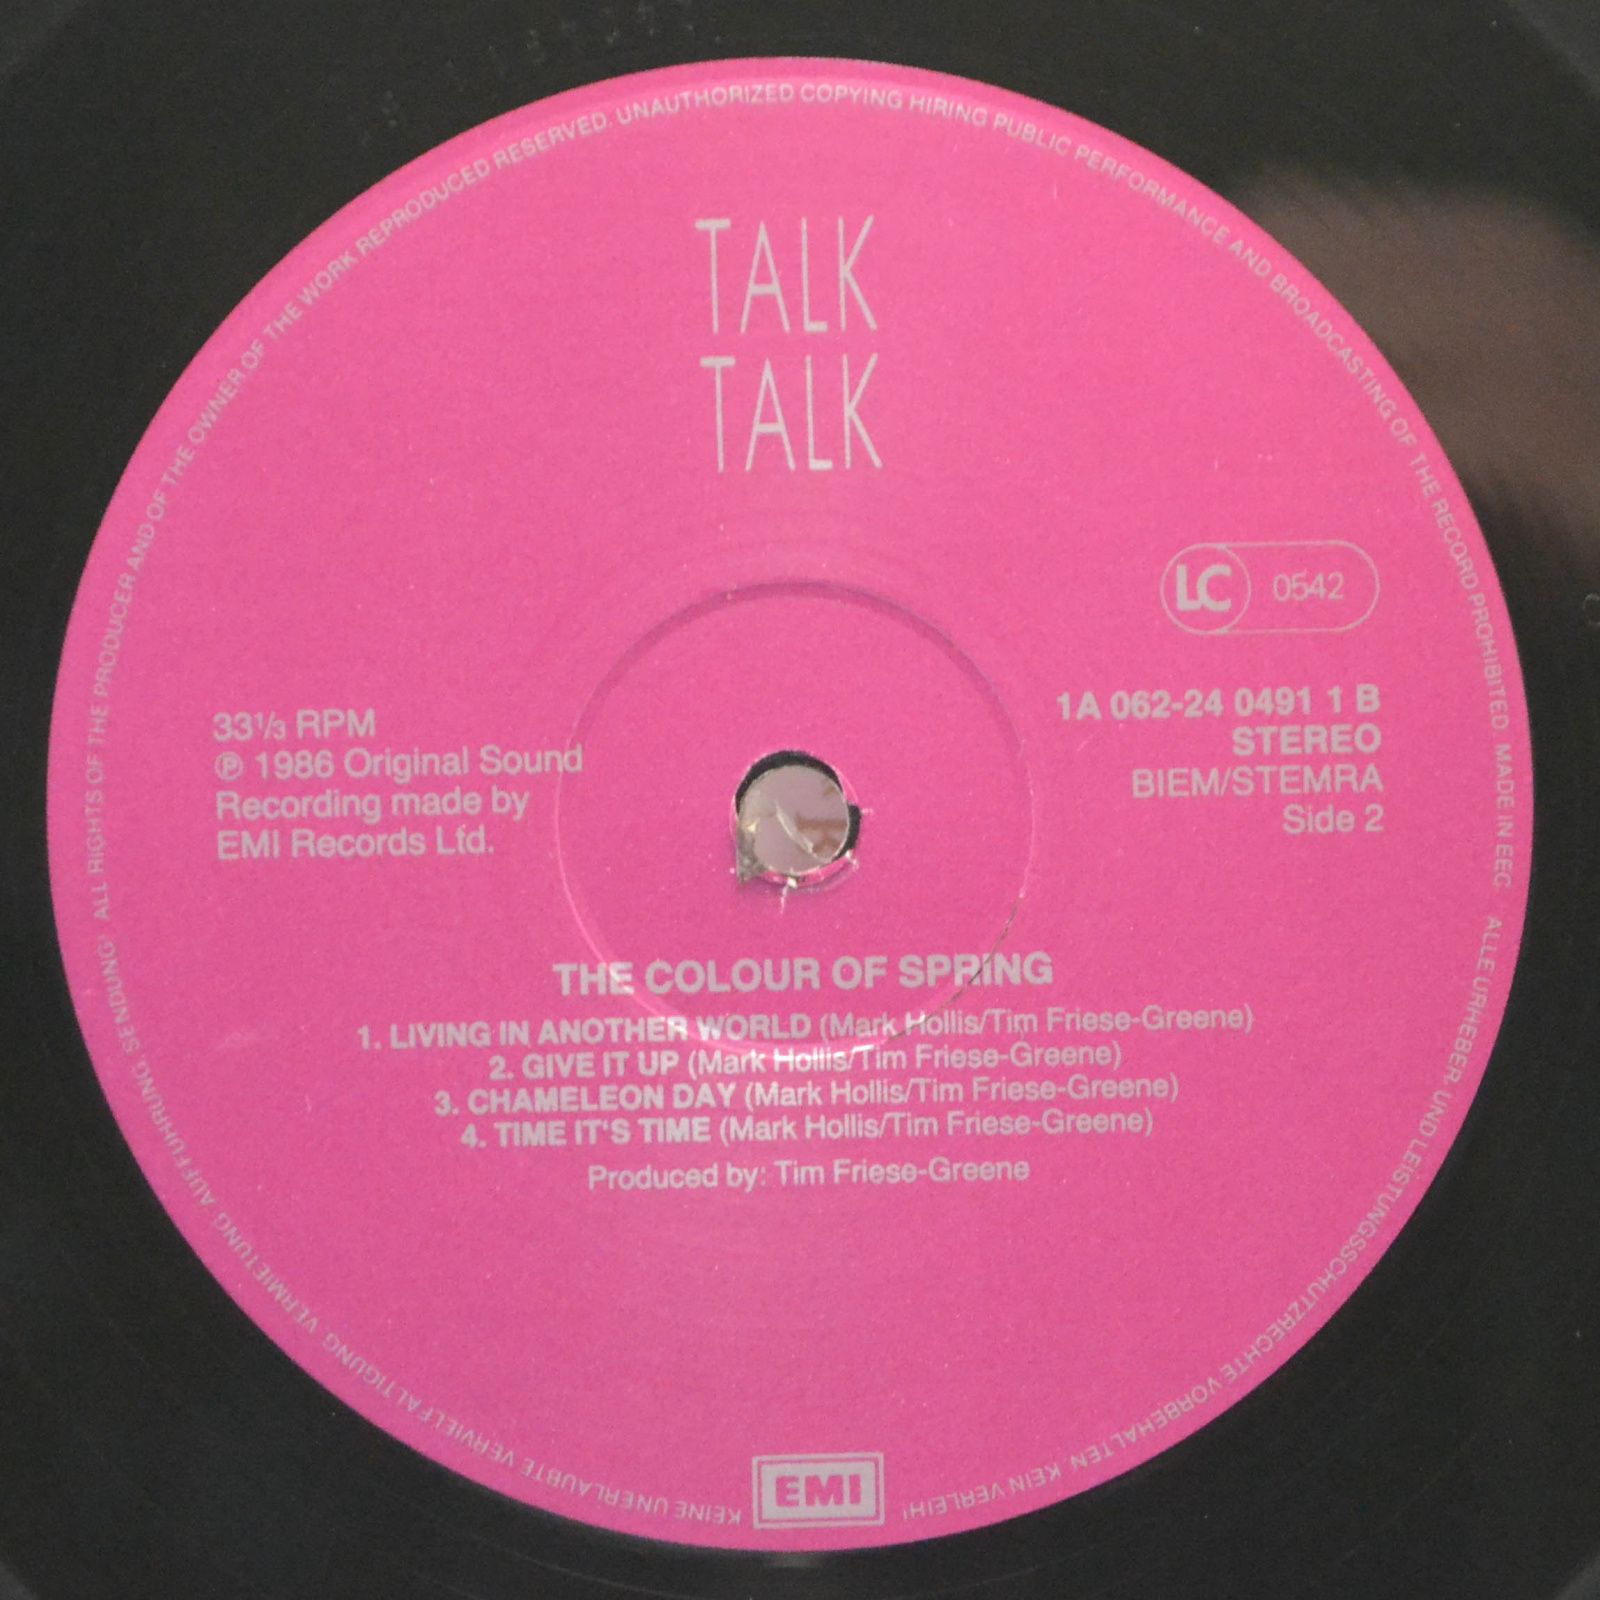 Talk talk 1986. Talk talk the Colour of Spring 1986. Talk talk London 1986. Colour of Spring talk talk LP. Spring Colour.